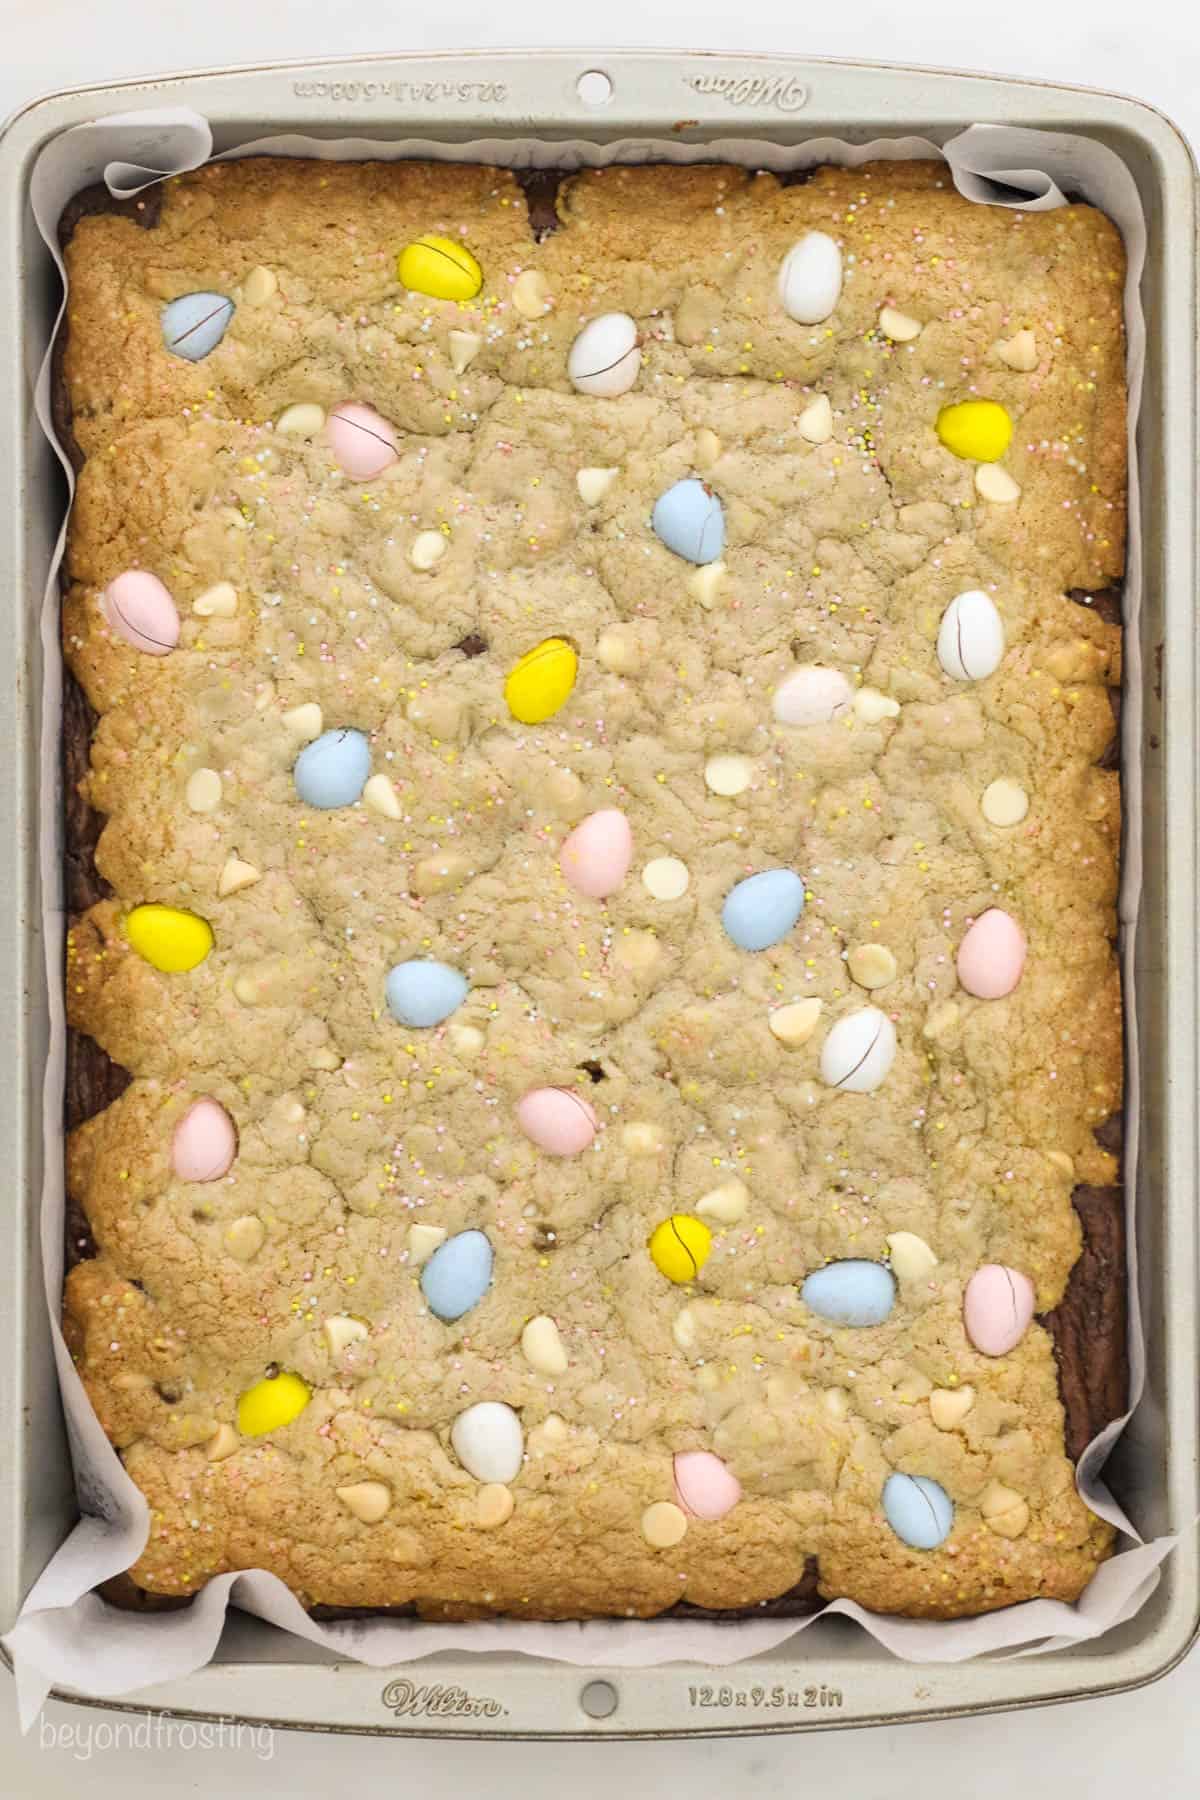 A pan of baked brookies